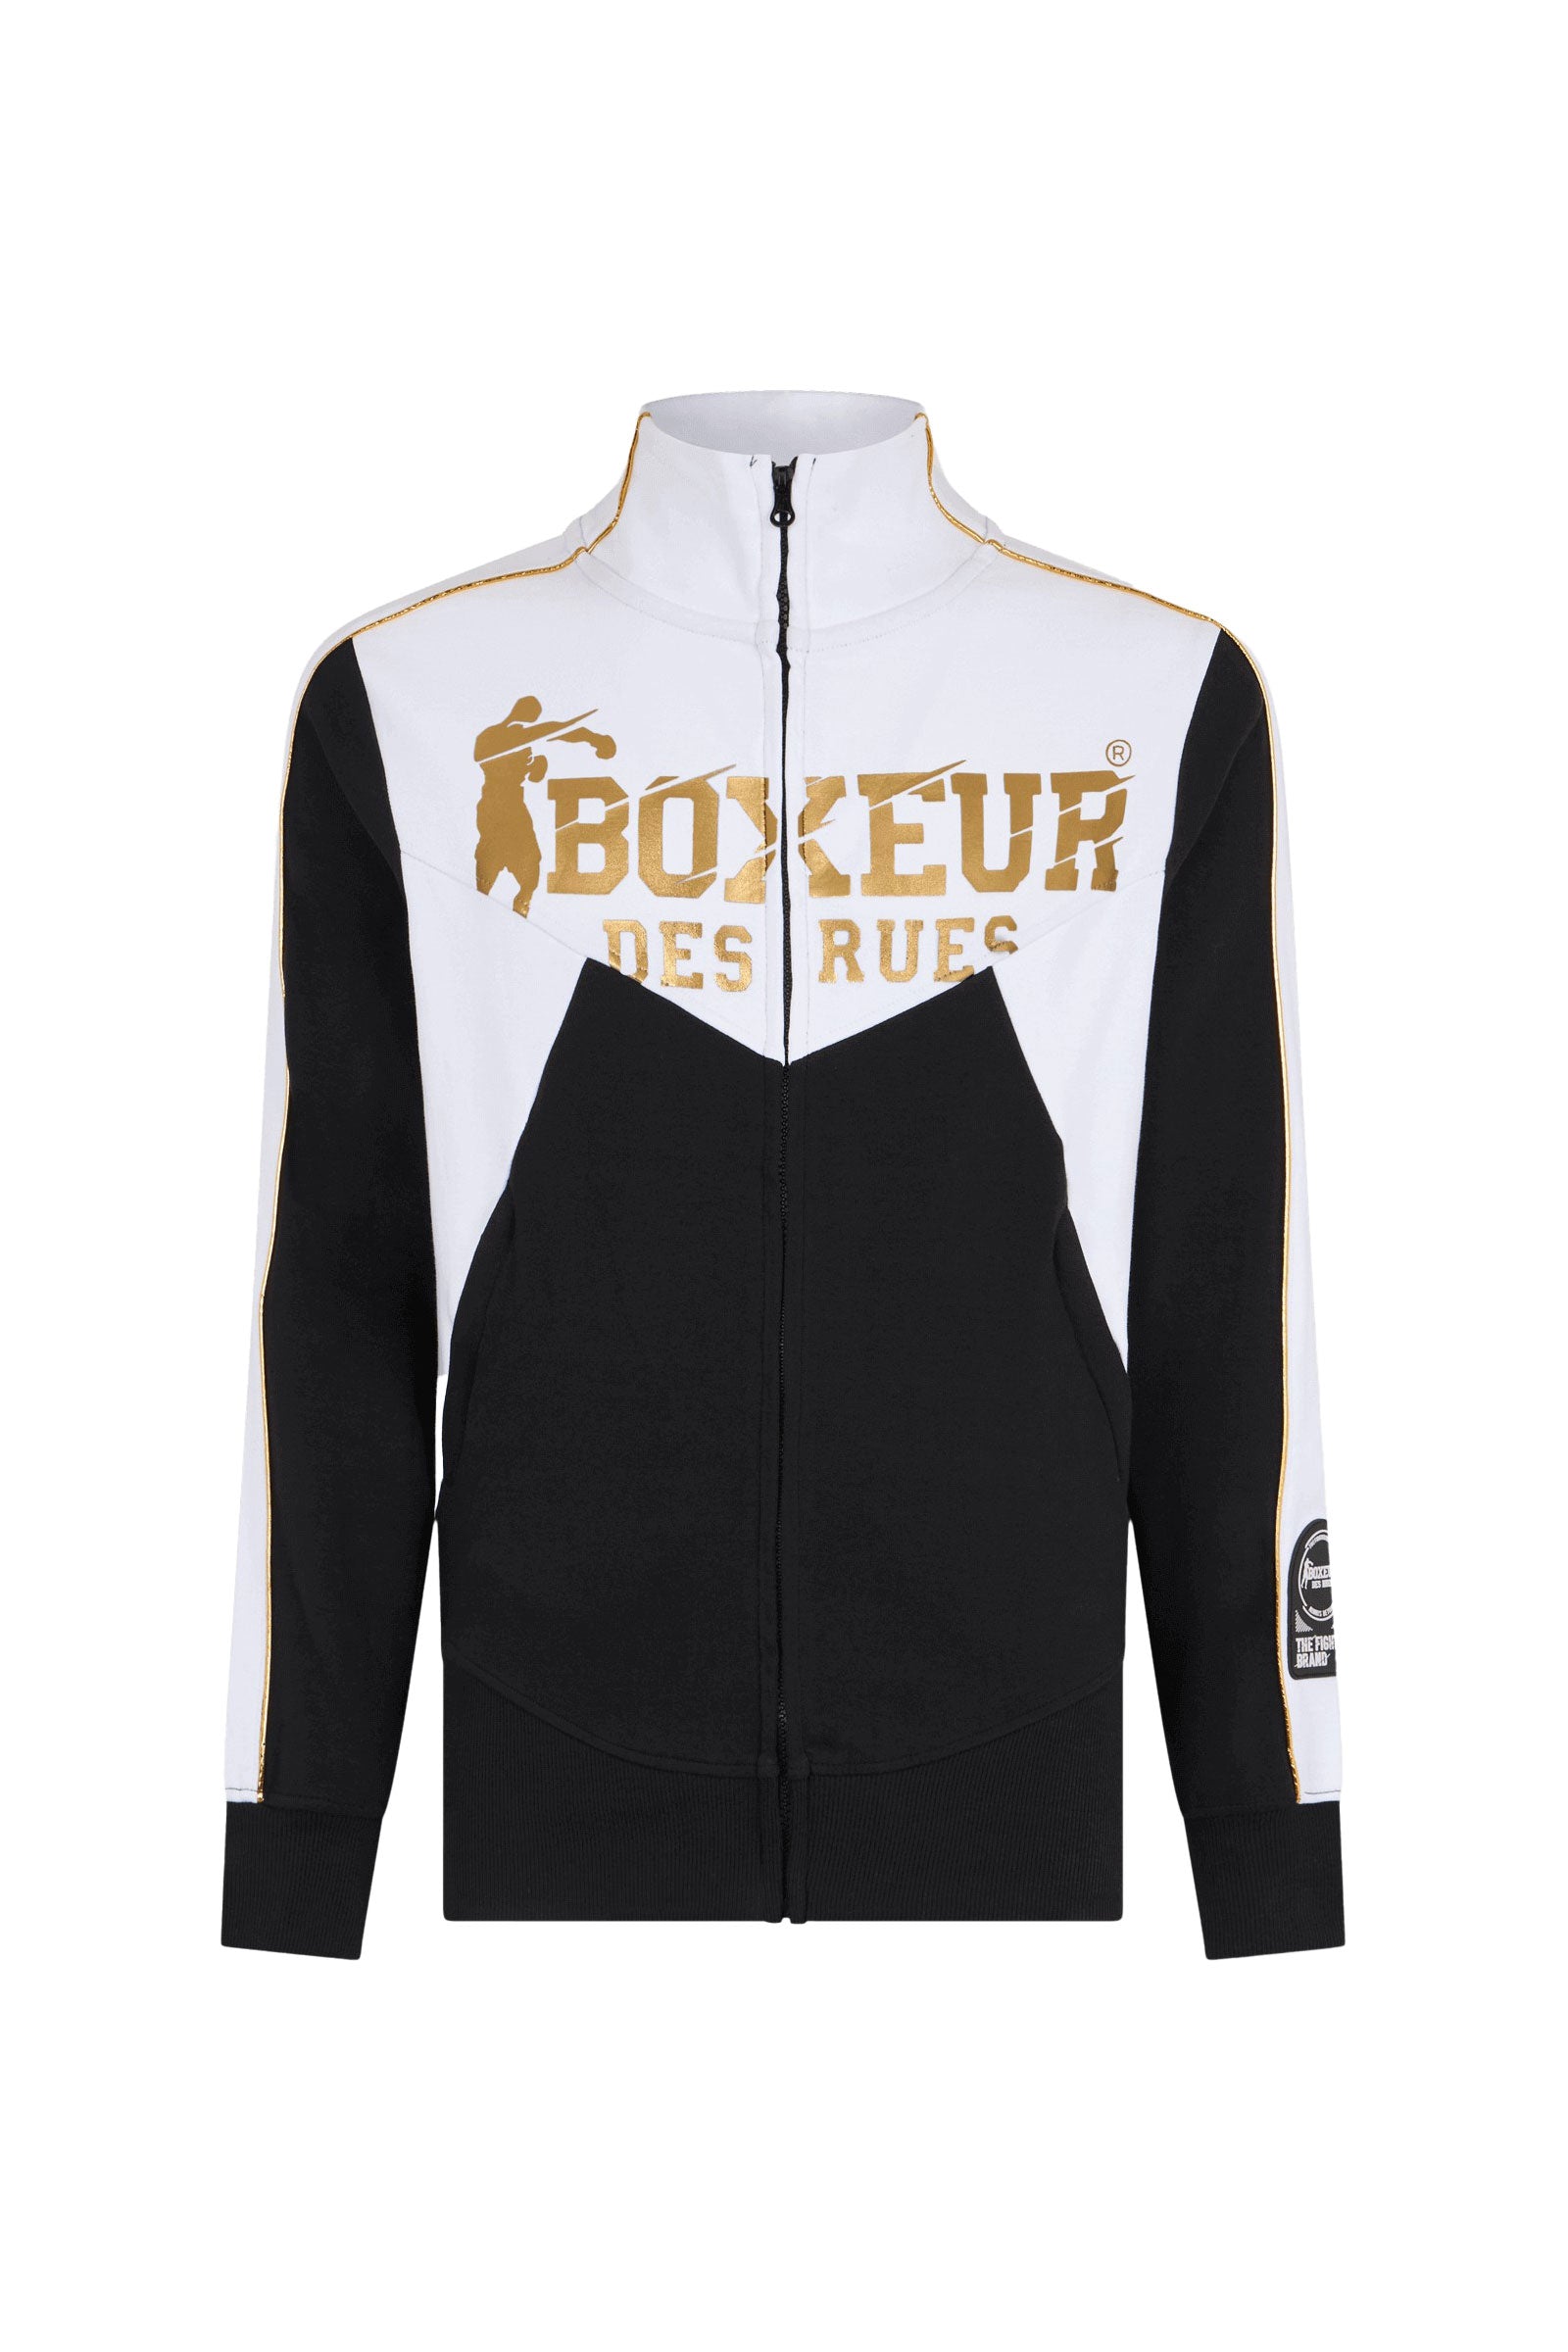 High Neck Full Zip Sweatshirt in Black Sweatjacken Boxeur des Rues   